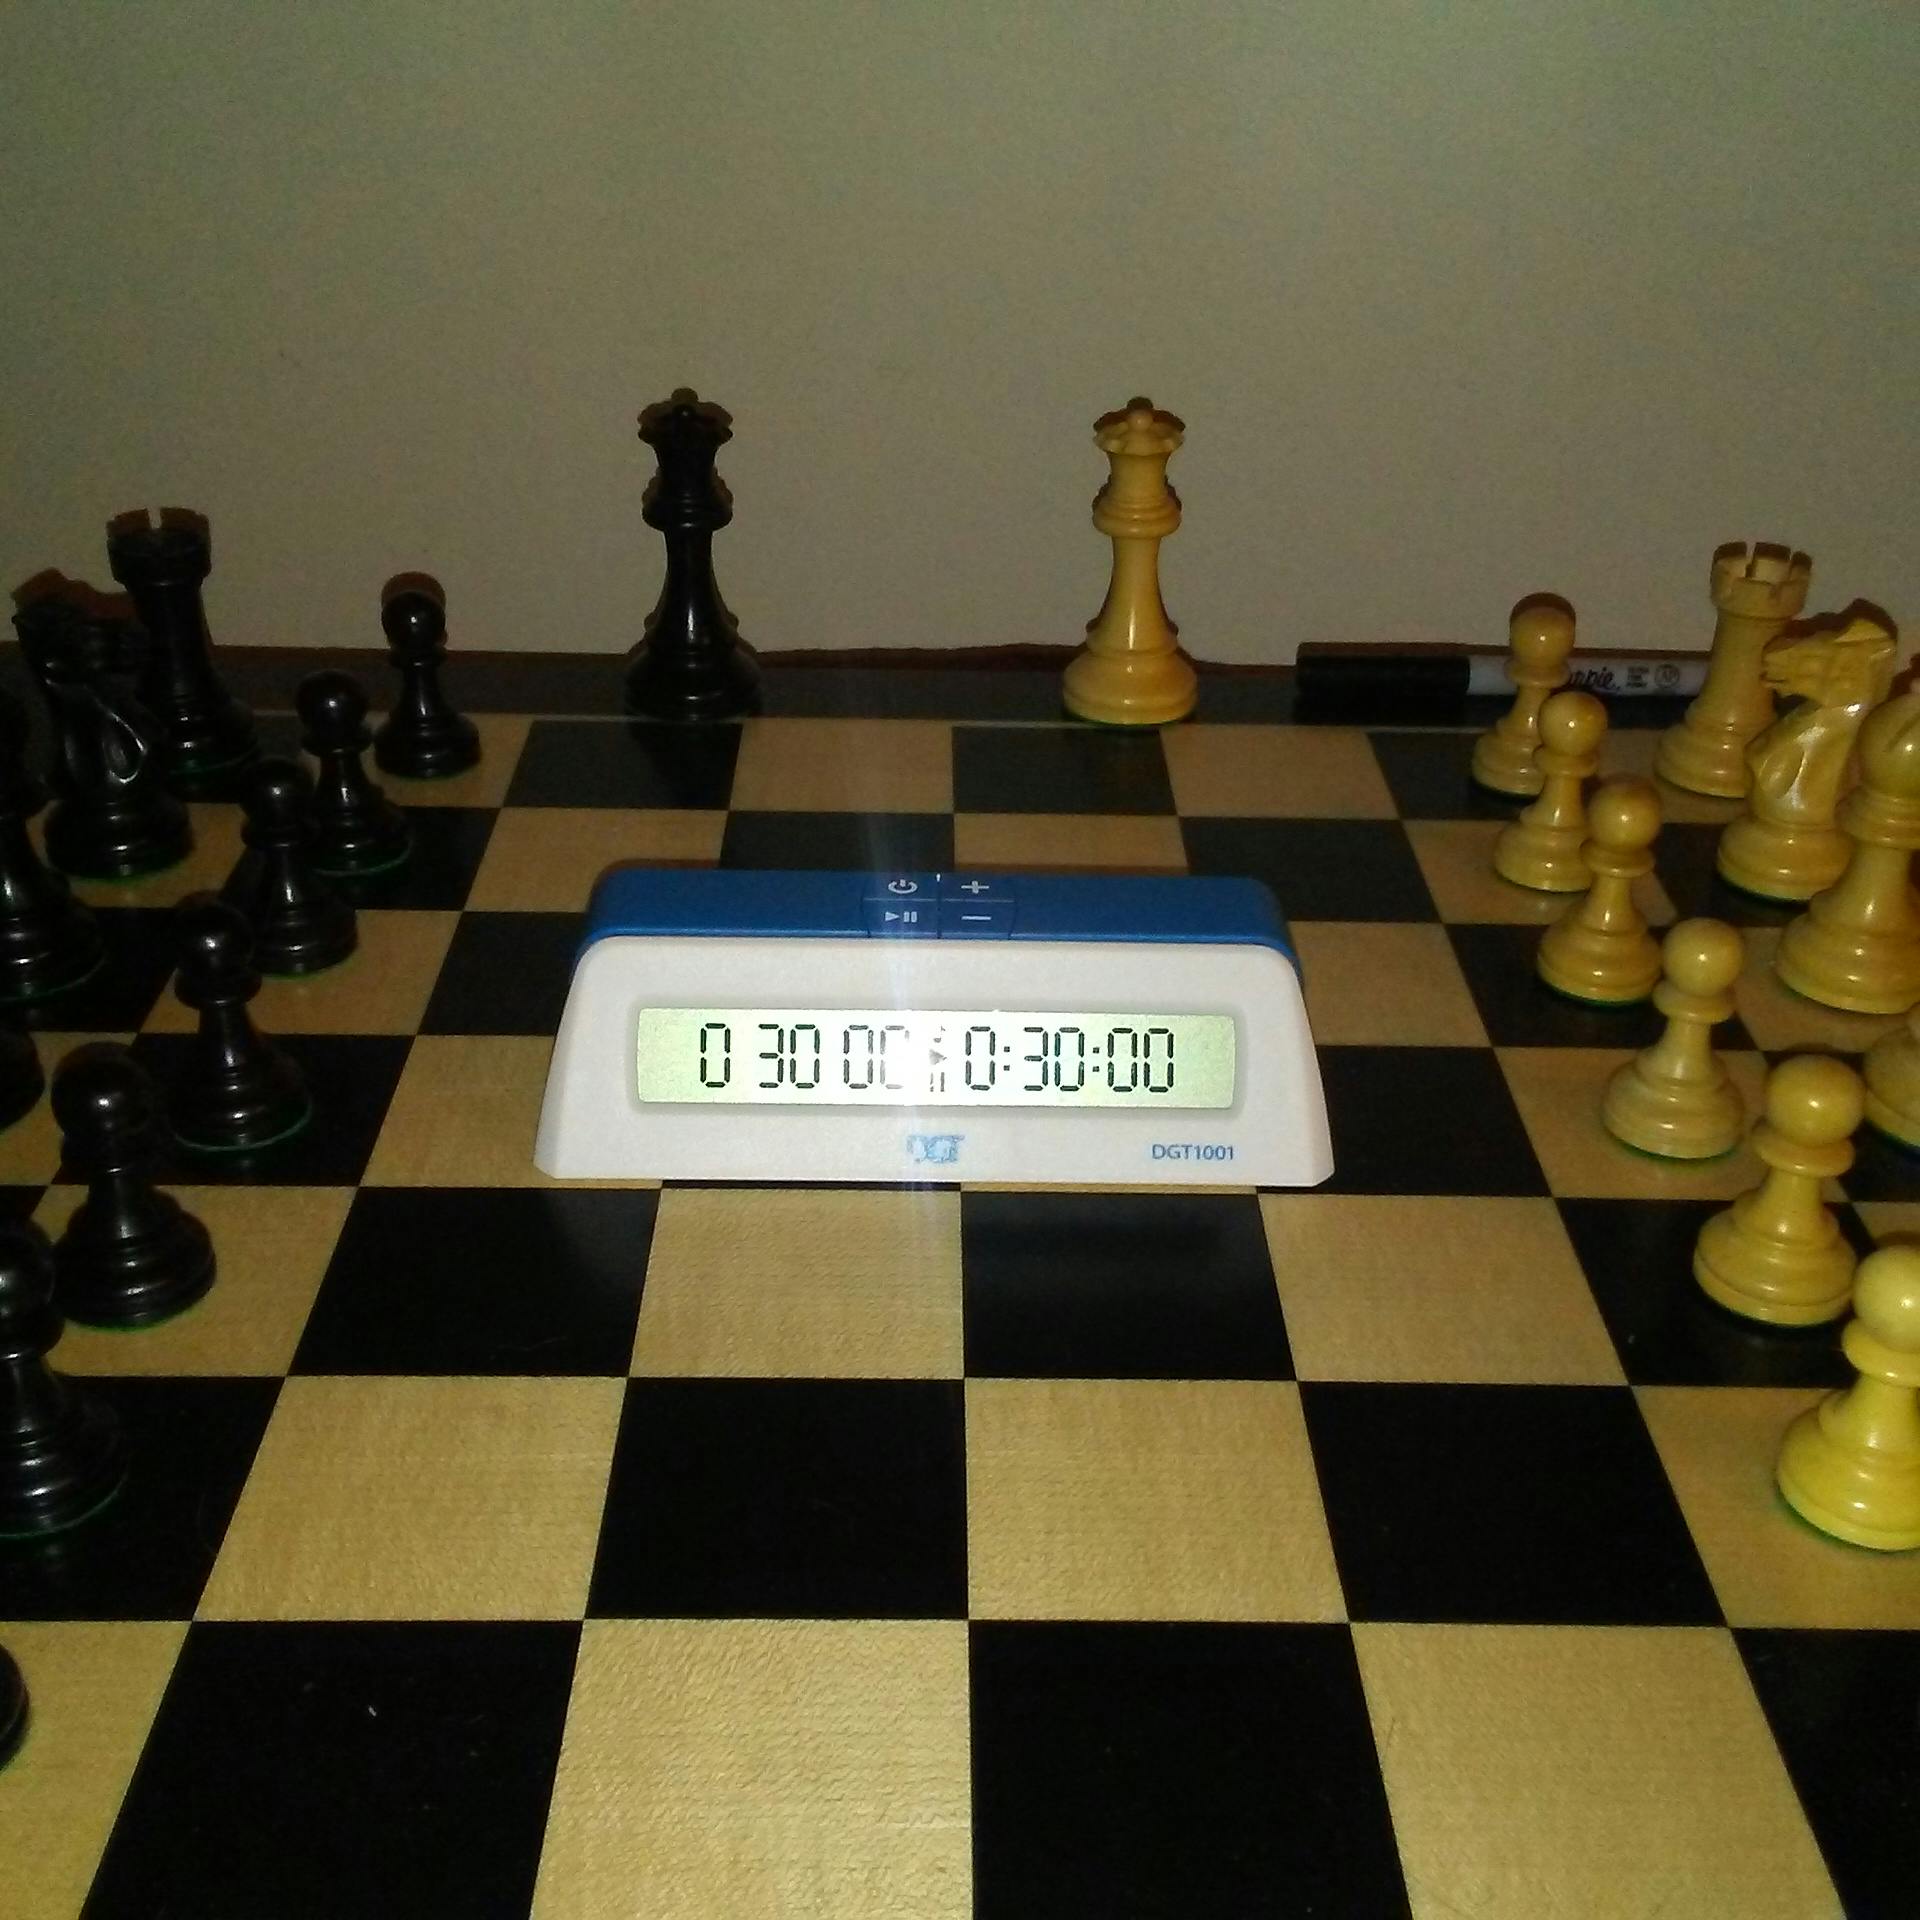 auto chess controls